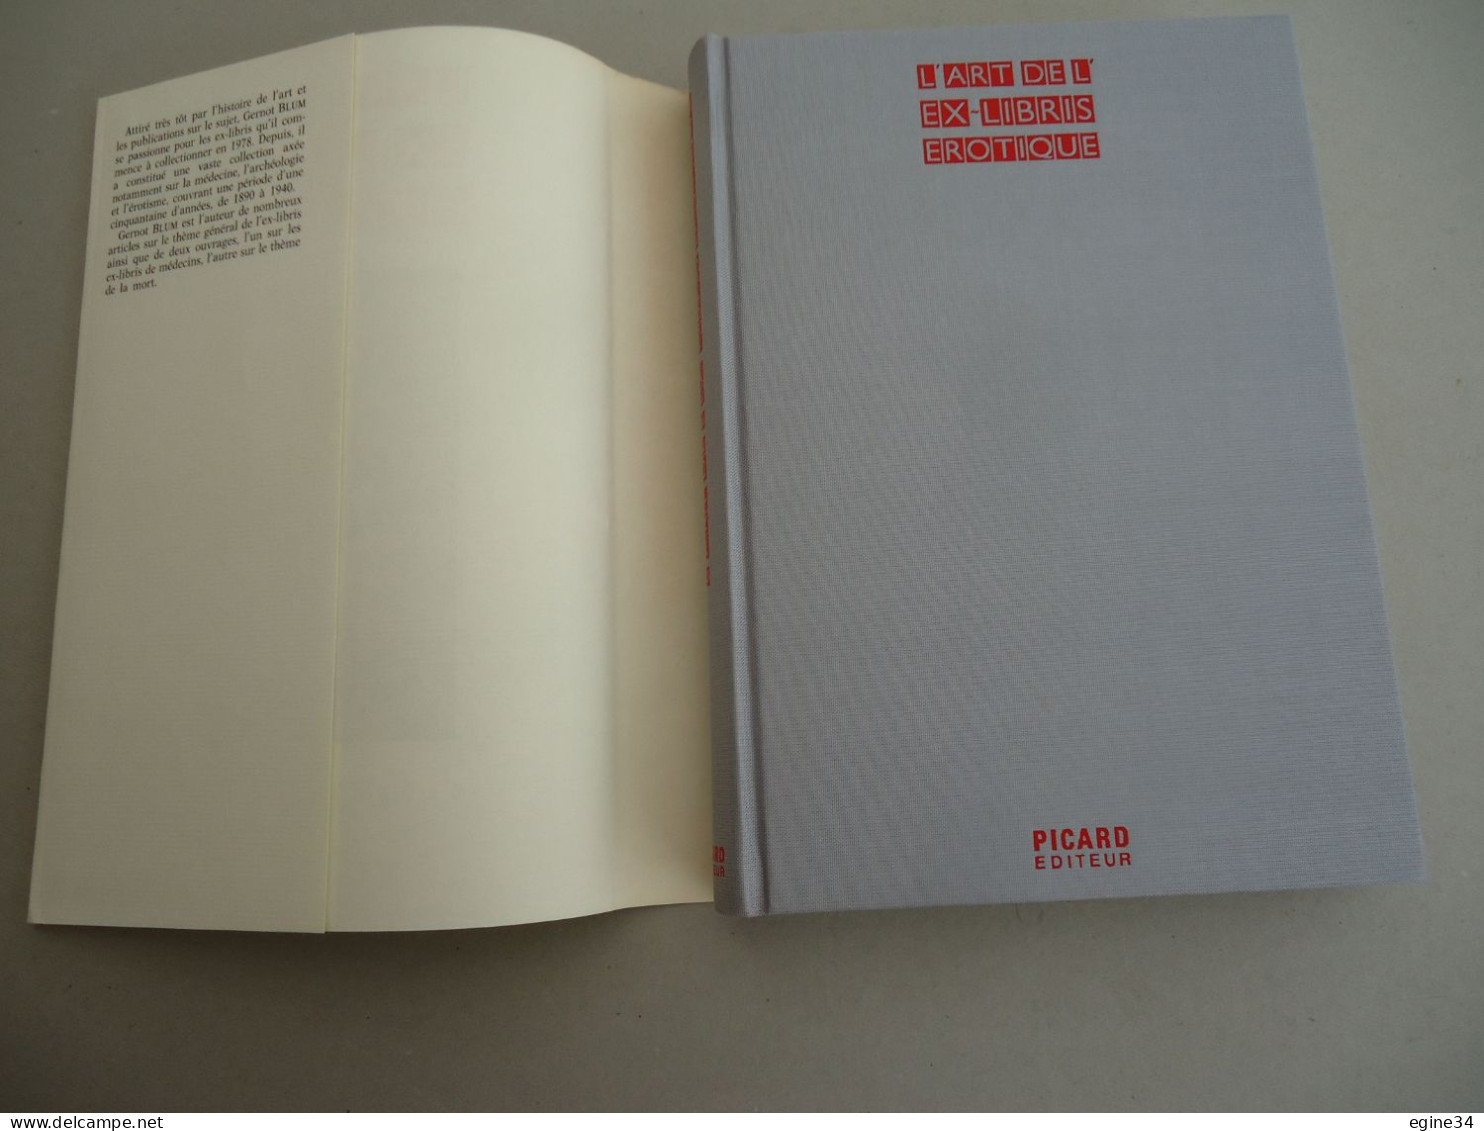 Picard Editeur - Gernot Blum - L'Art De L'Ex-Libris Erotique - 1990 - Illustrations Couleurs & Noir Et  Blanc - Art